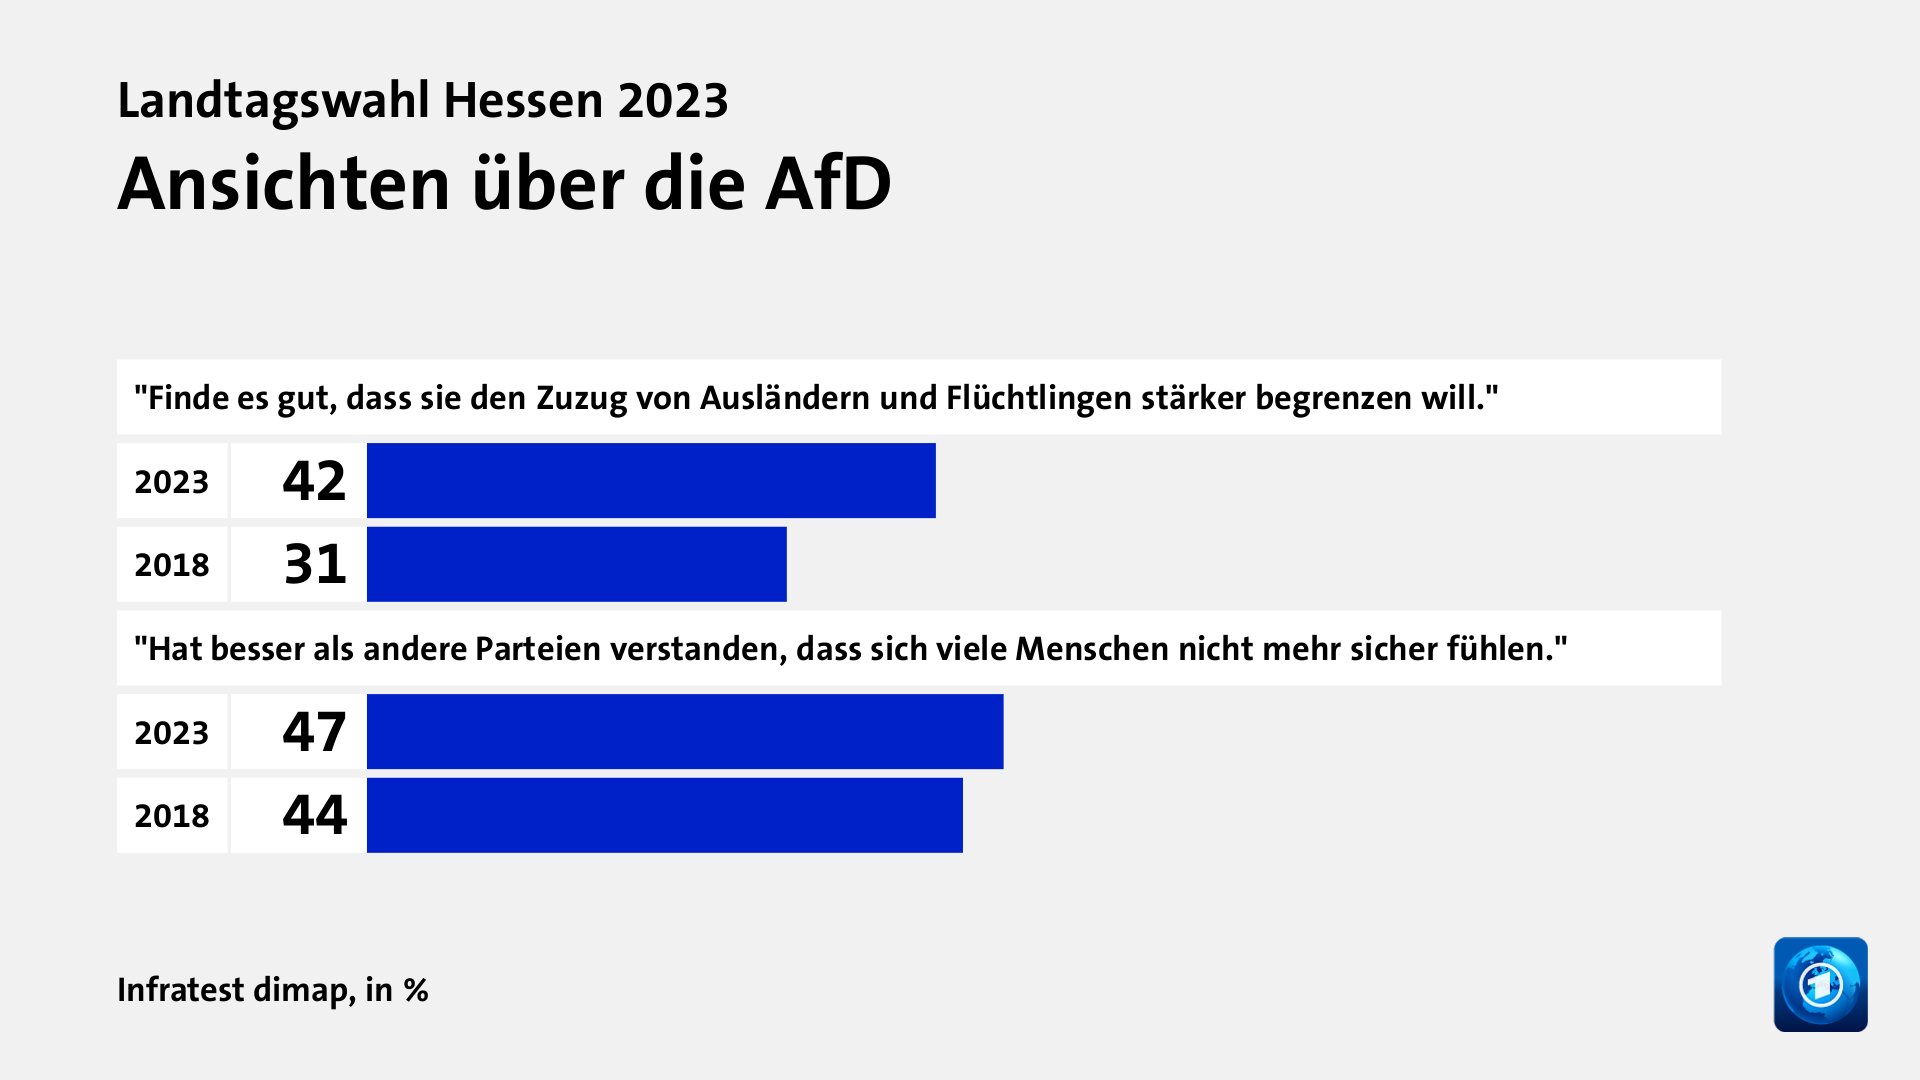 Ansichten über die AfD, in %: 2023 42, 2018 31, 2023 47, 2018 44, Quelle: Infratest dimap